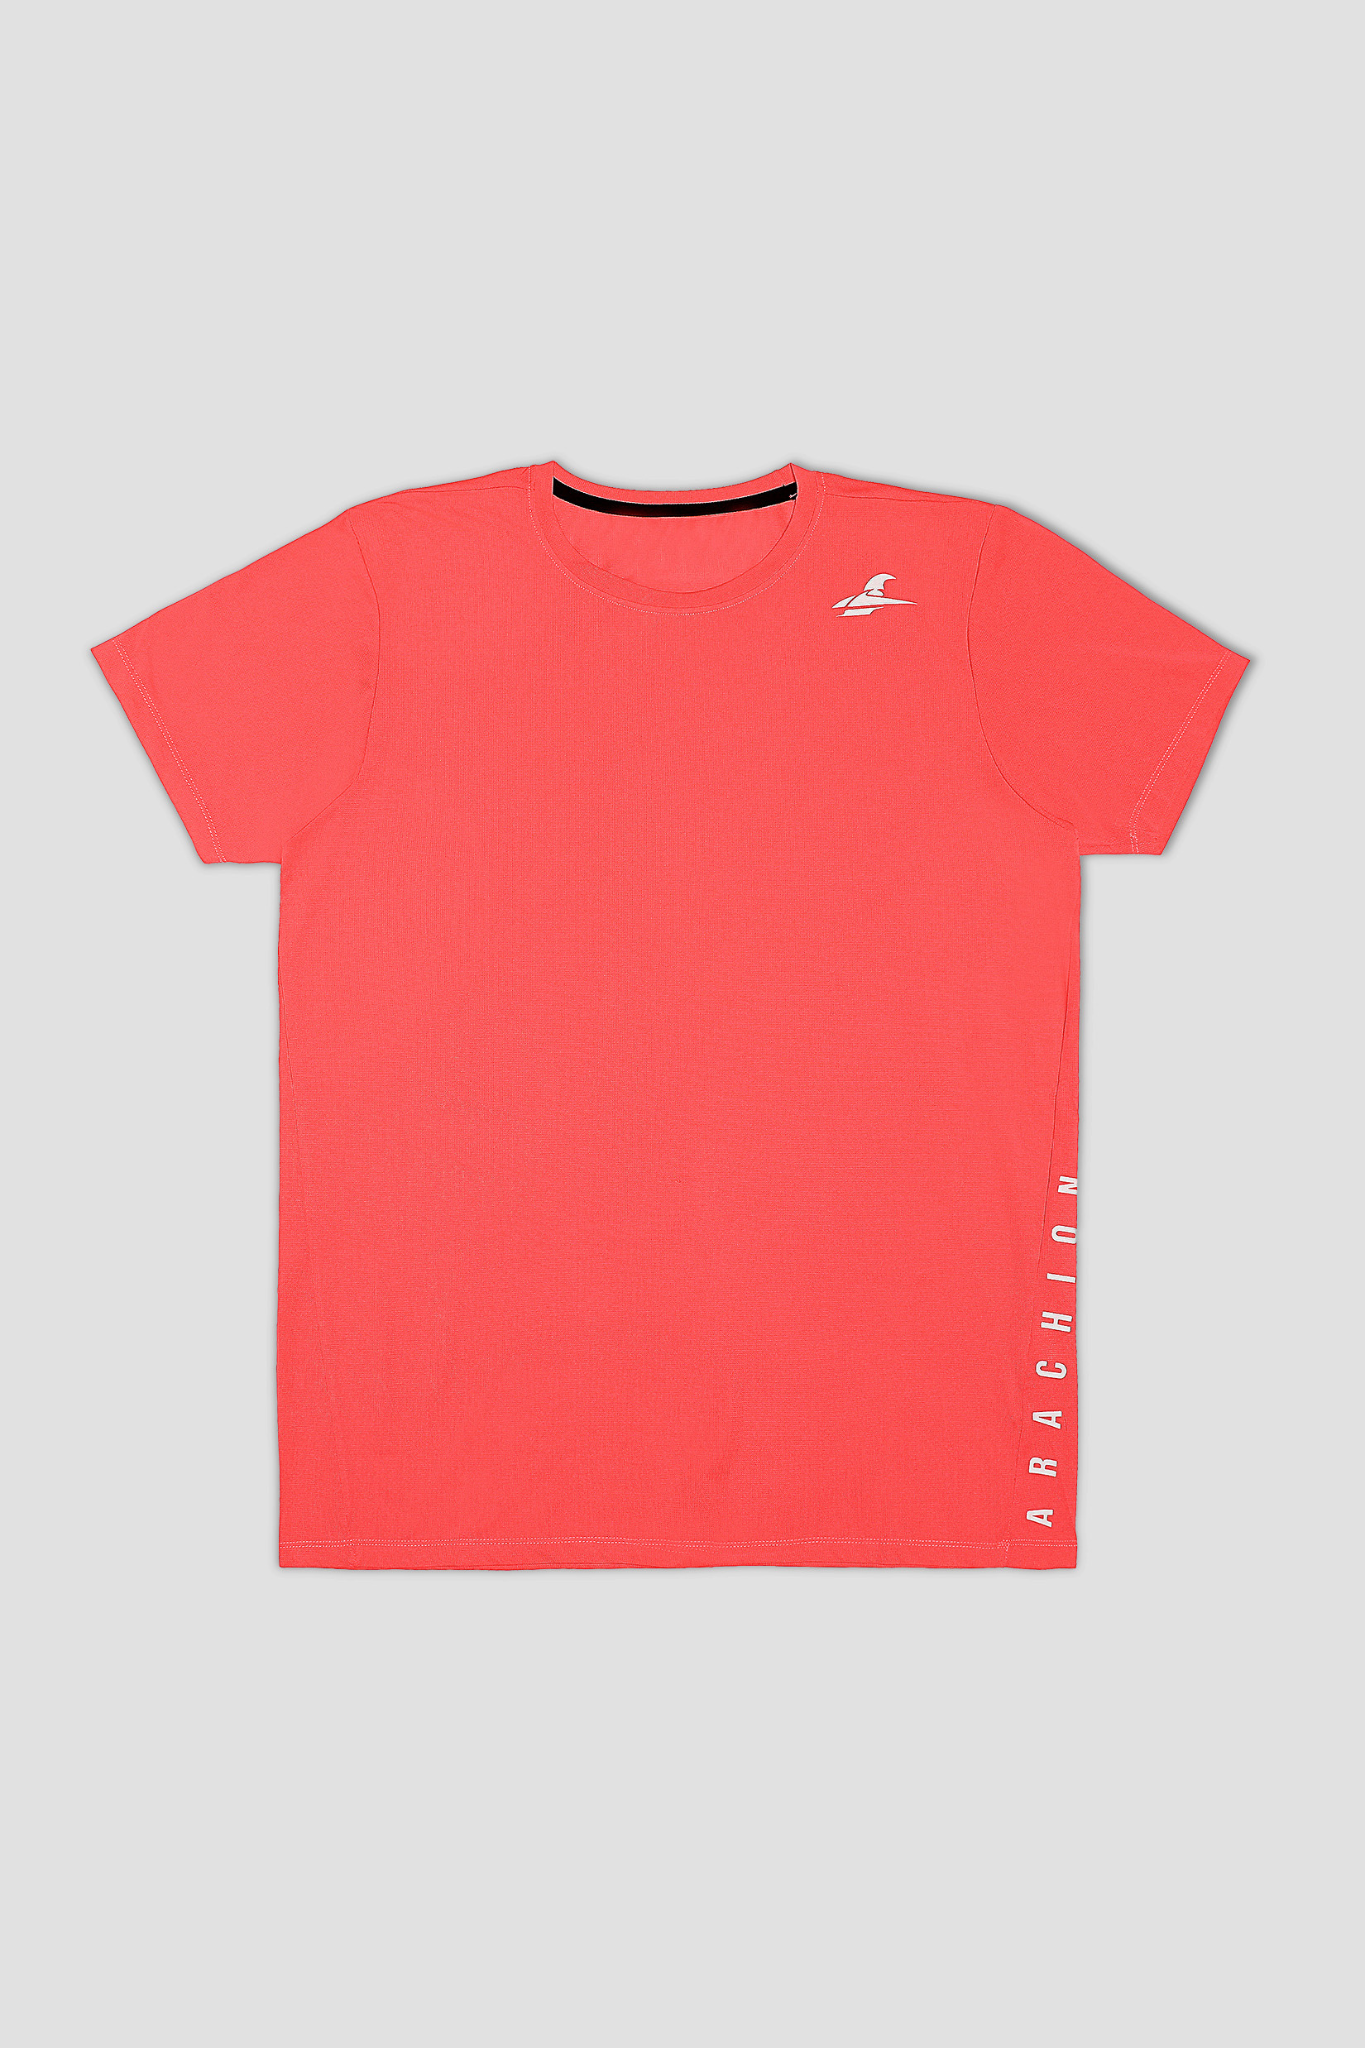 Arachion Triumph T-shirt | Coral Red